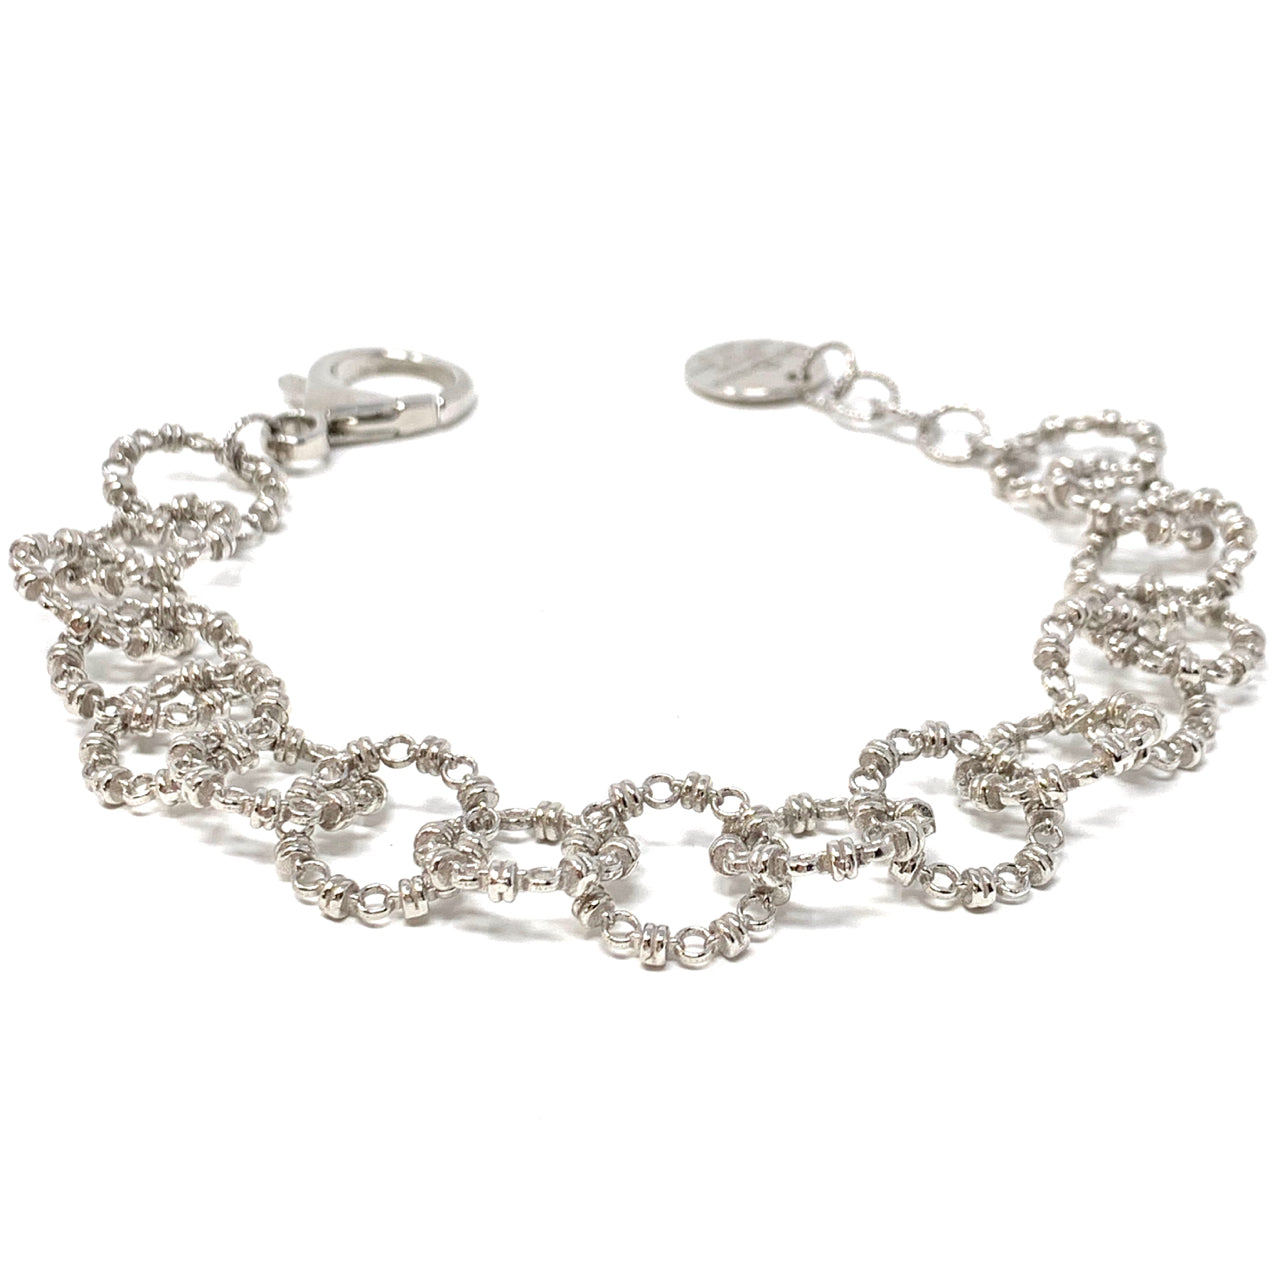 Signorelli Bracelet in Silver